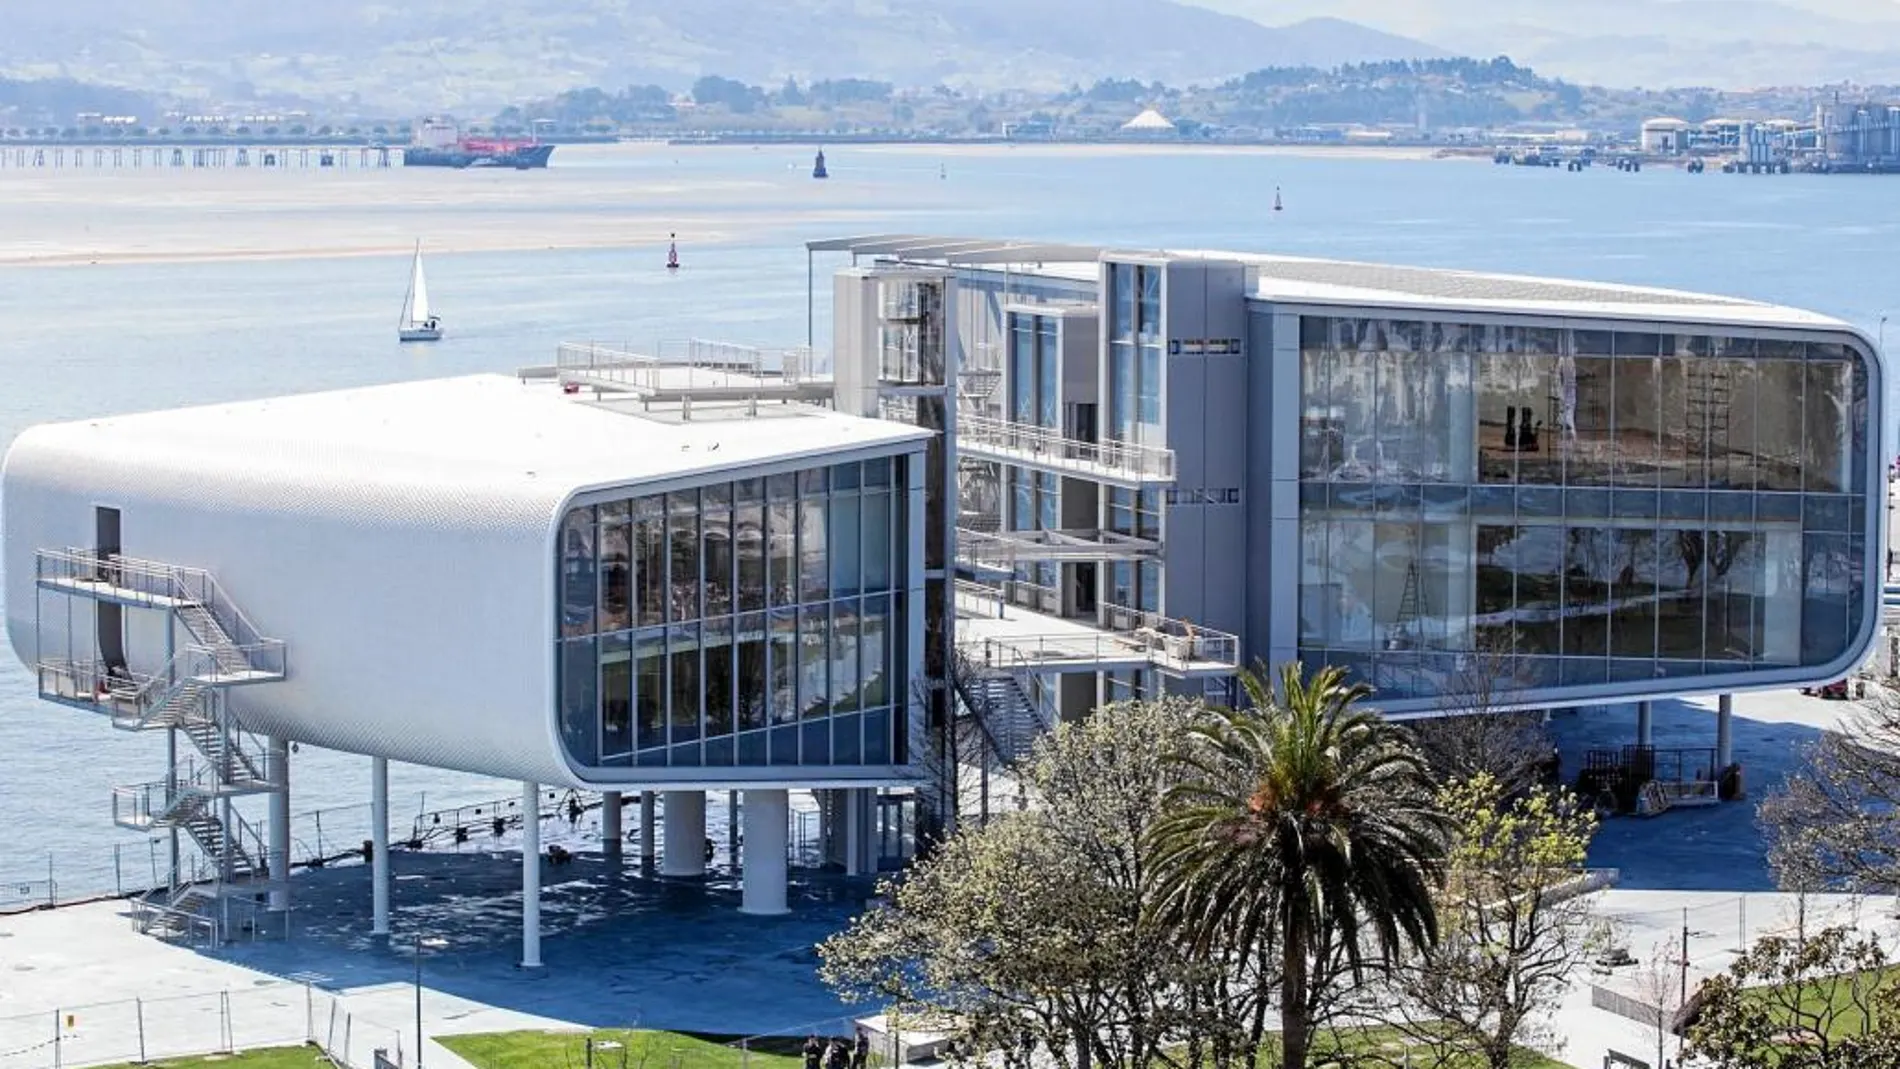 El Centro Botín se levanta en la Bahía de Santander, en pleno Paseo de Pereda, obra de Renzo Piano